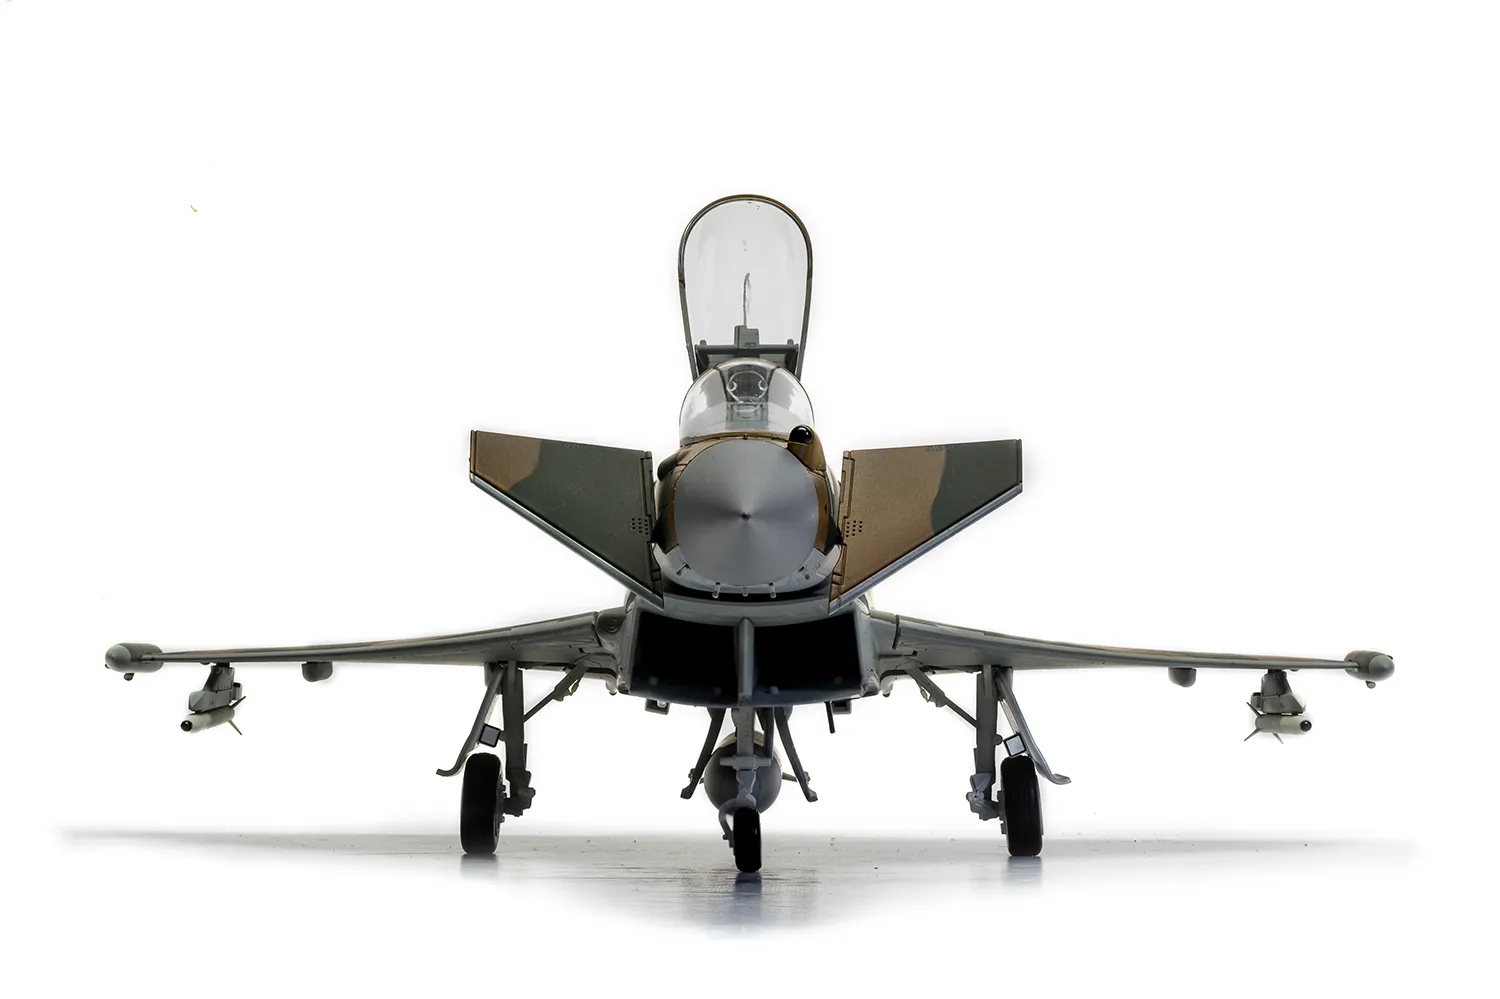 Eurofighter Typhoon FGR.4 - Battle of Britain 75th Anniversary scheme